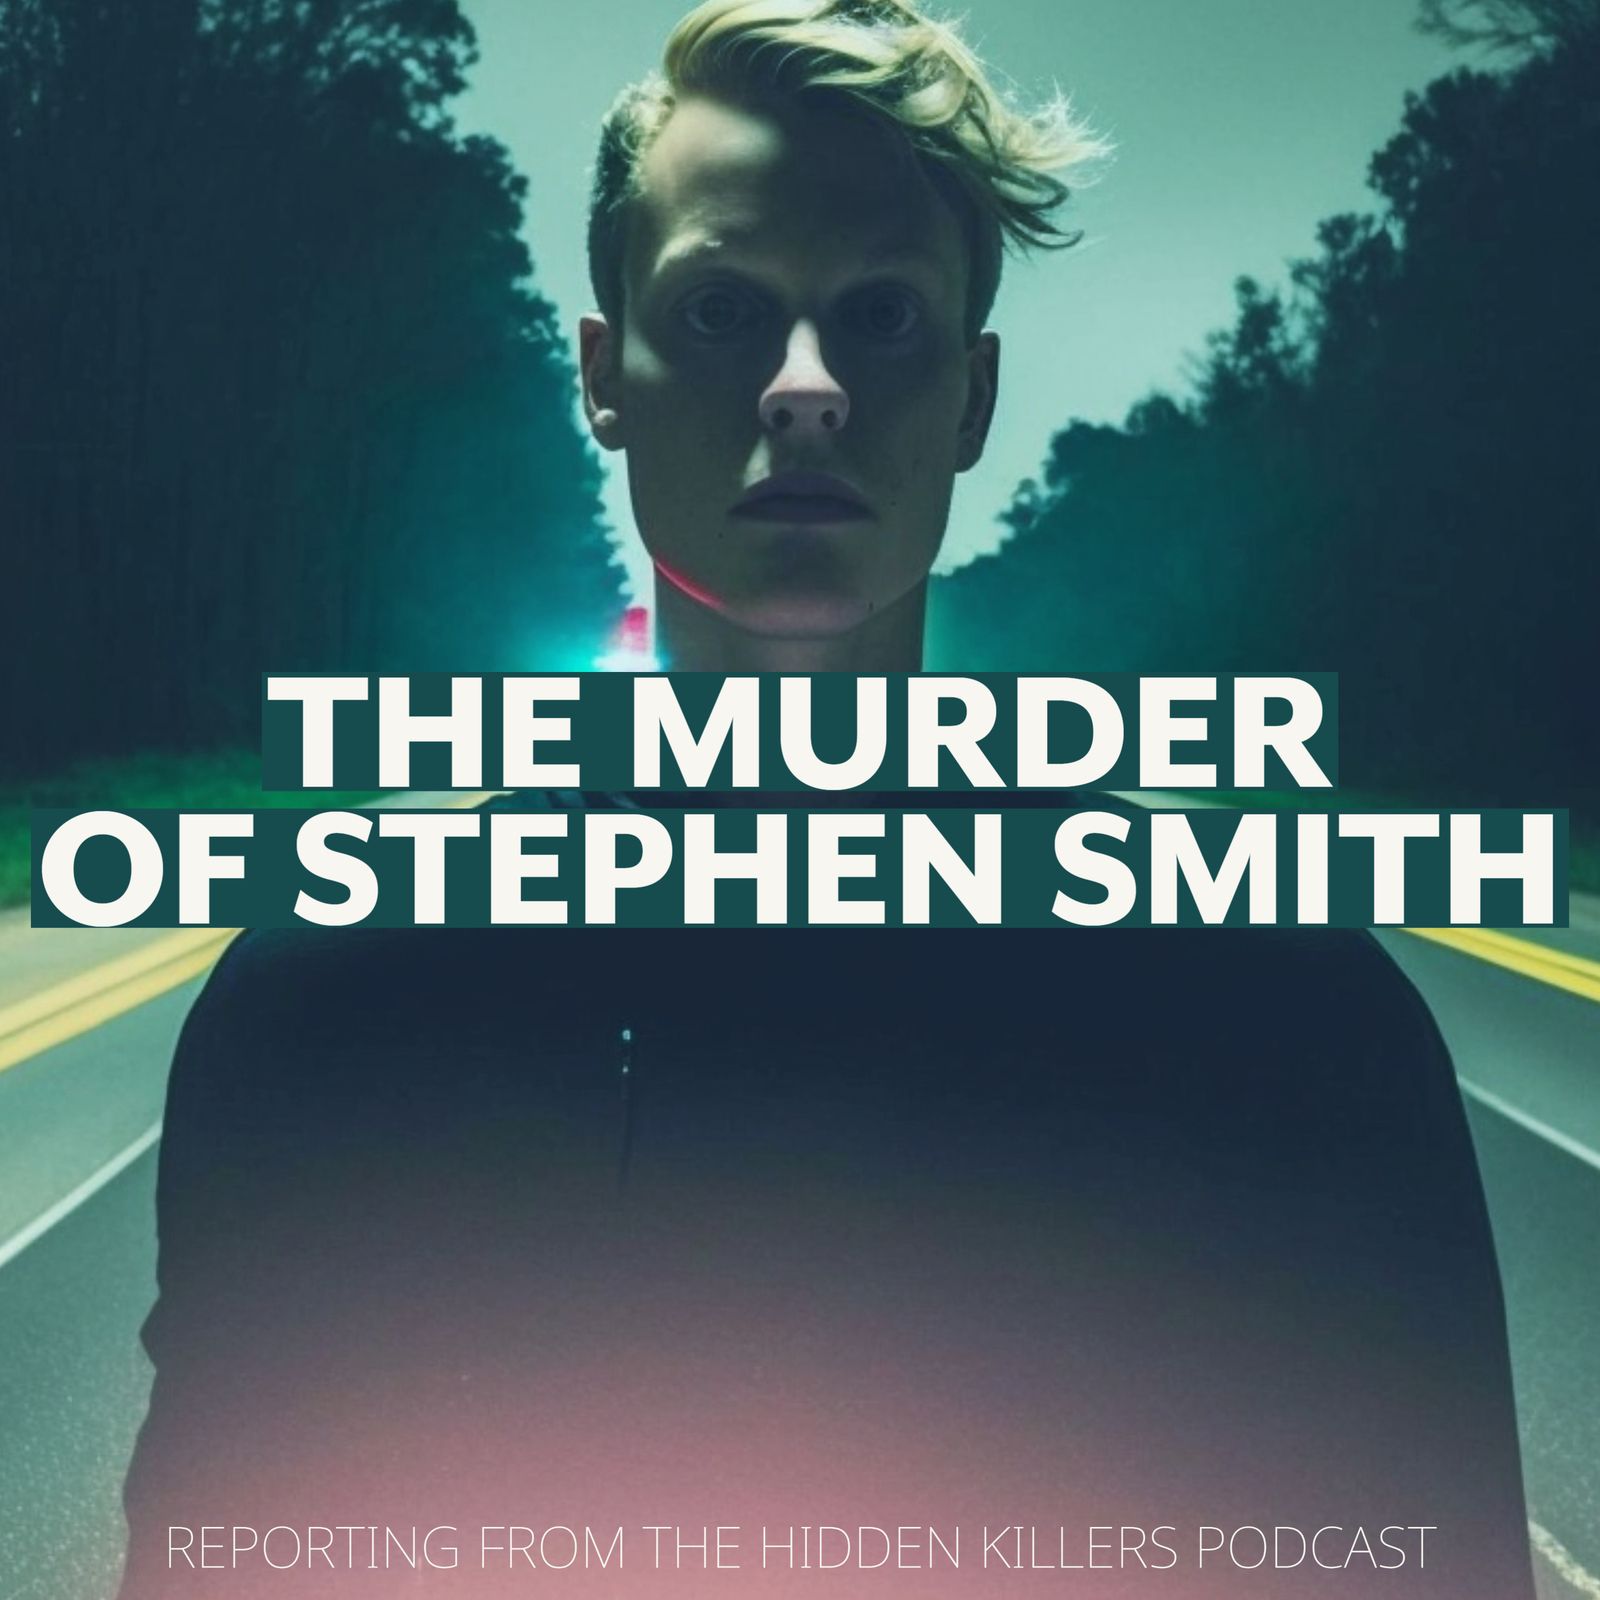 Stephen Smith Murder